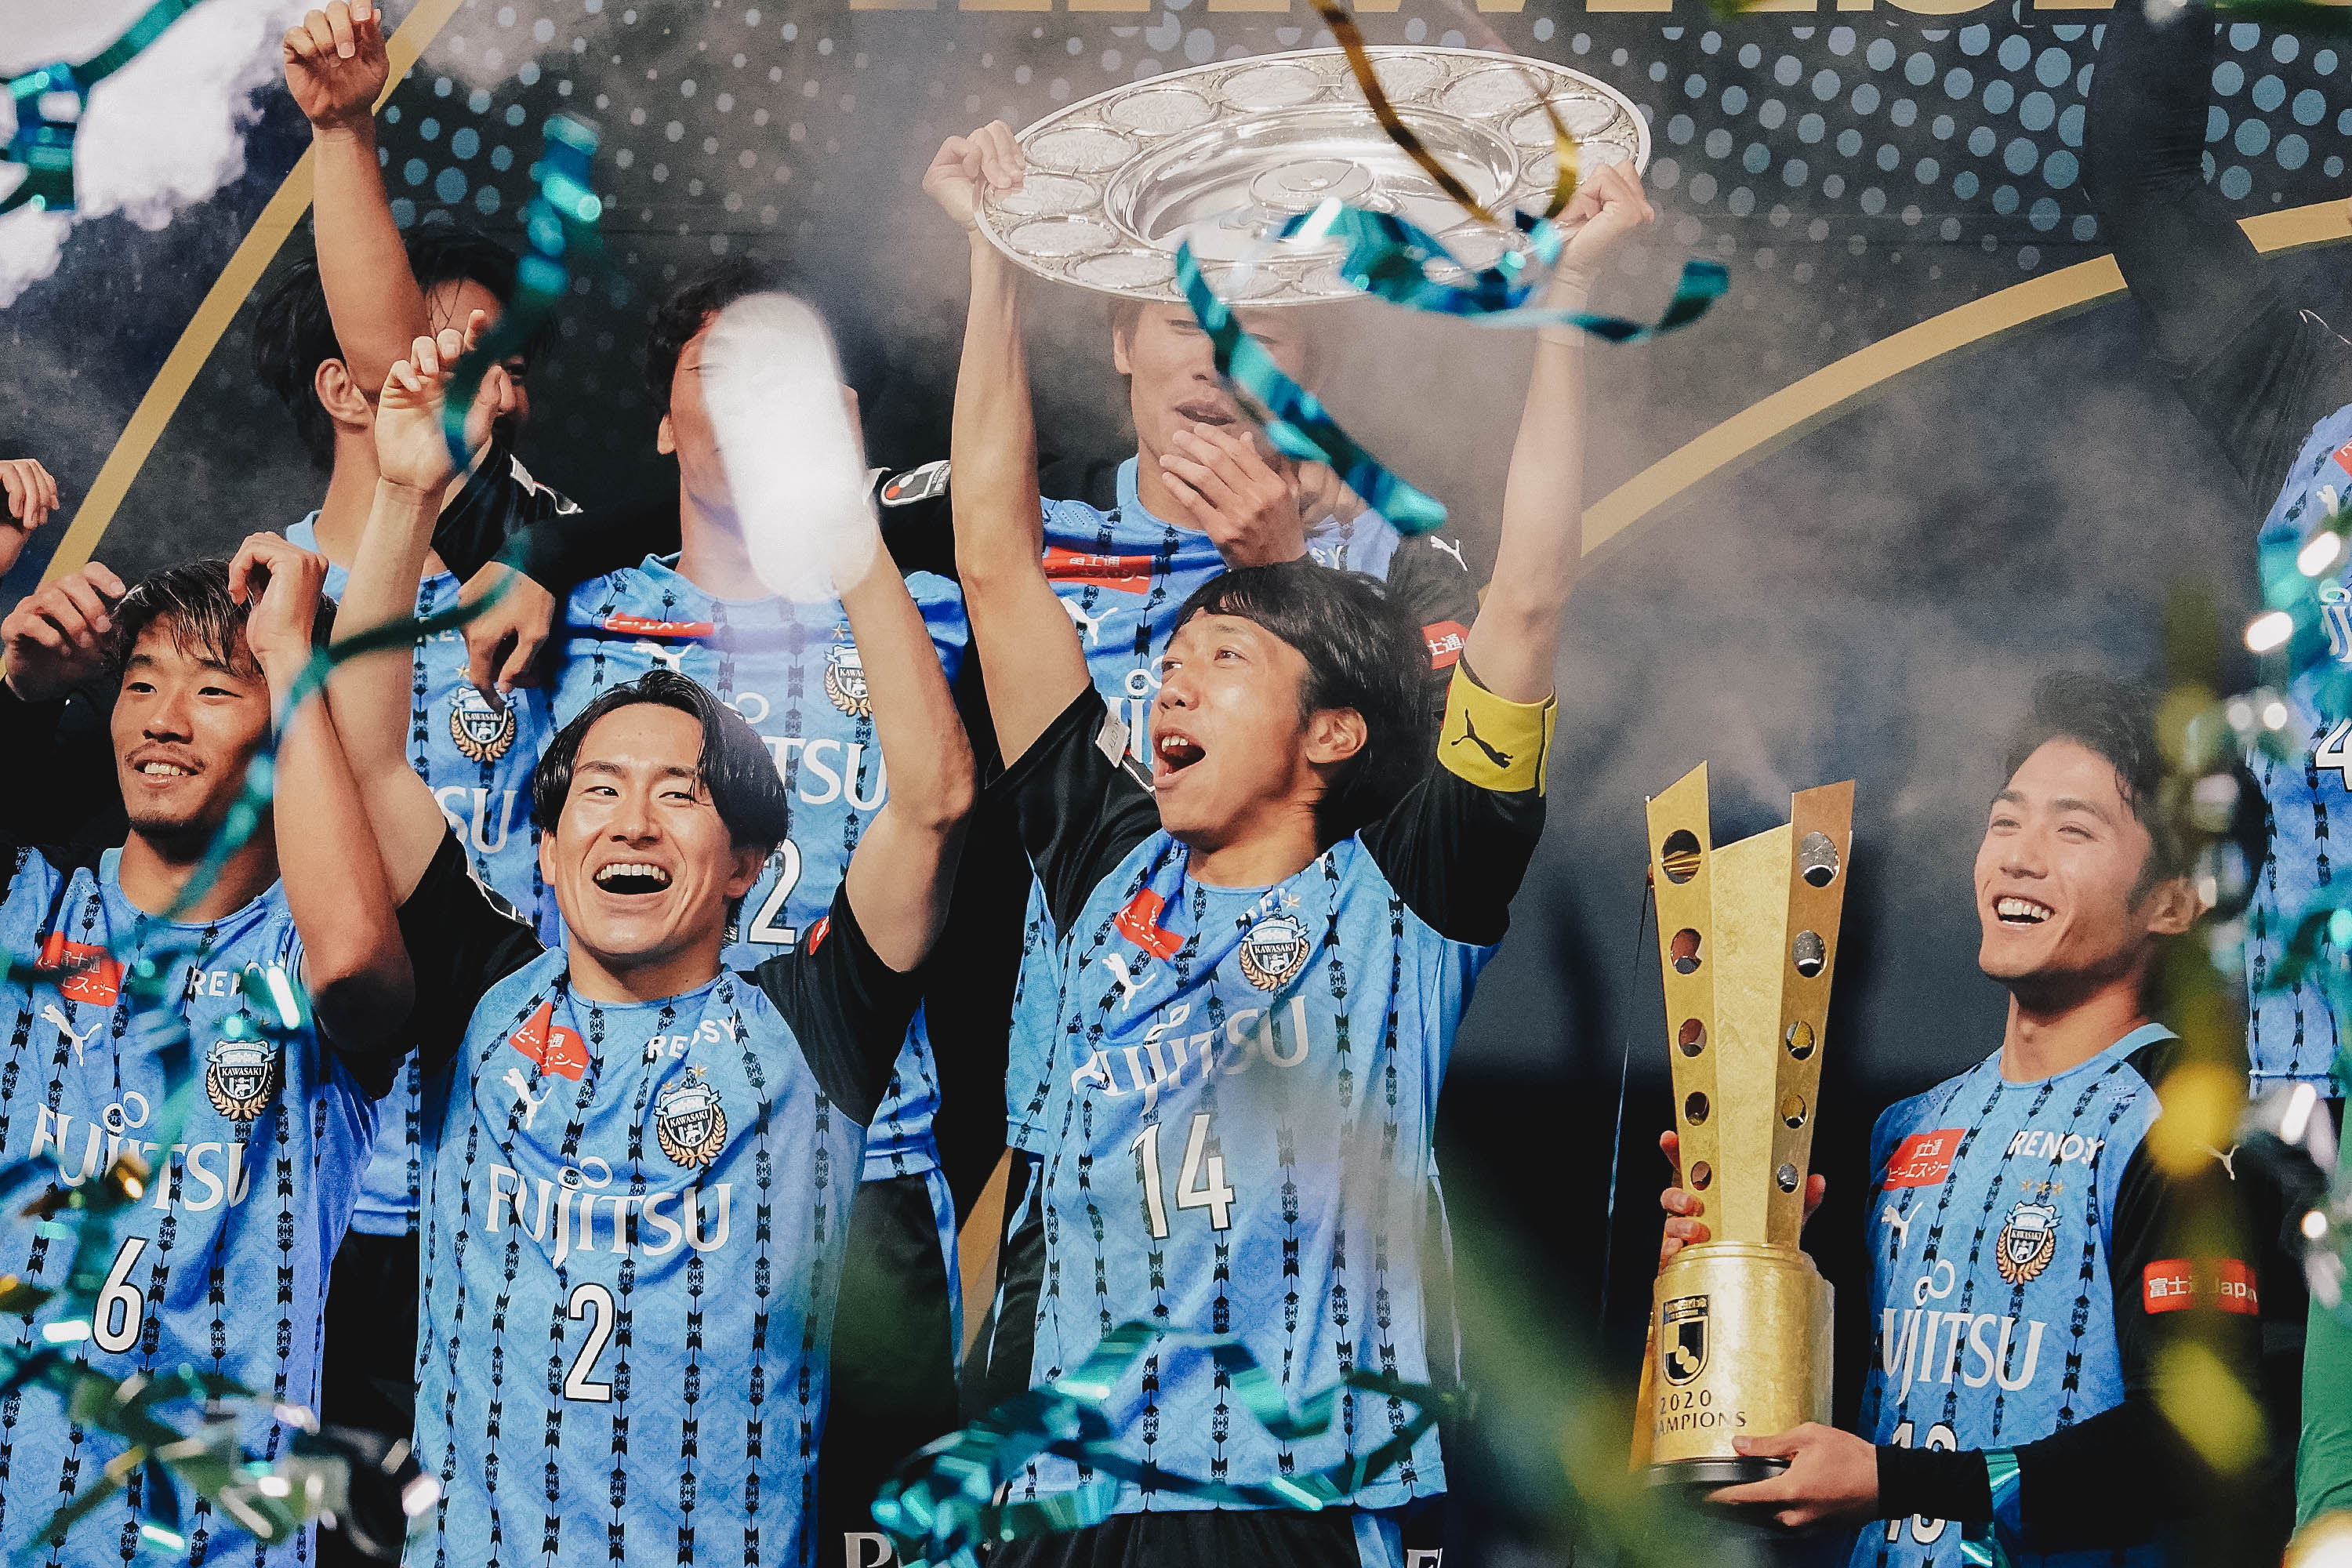 Persebaran Gelar J1 League: Kashima Antlers Terbanyak, Terpusat di Tokyo dan Pulau Honshu